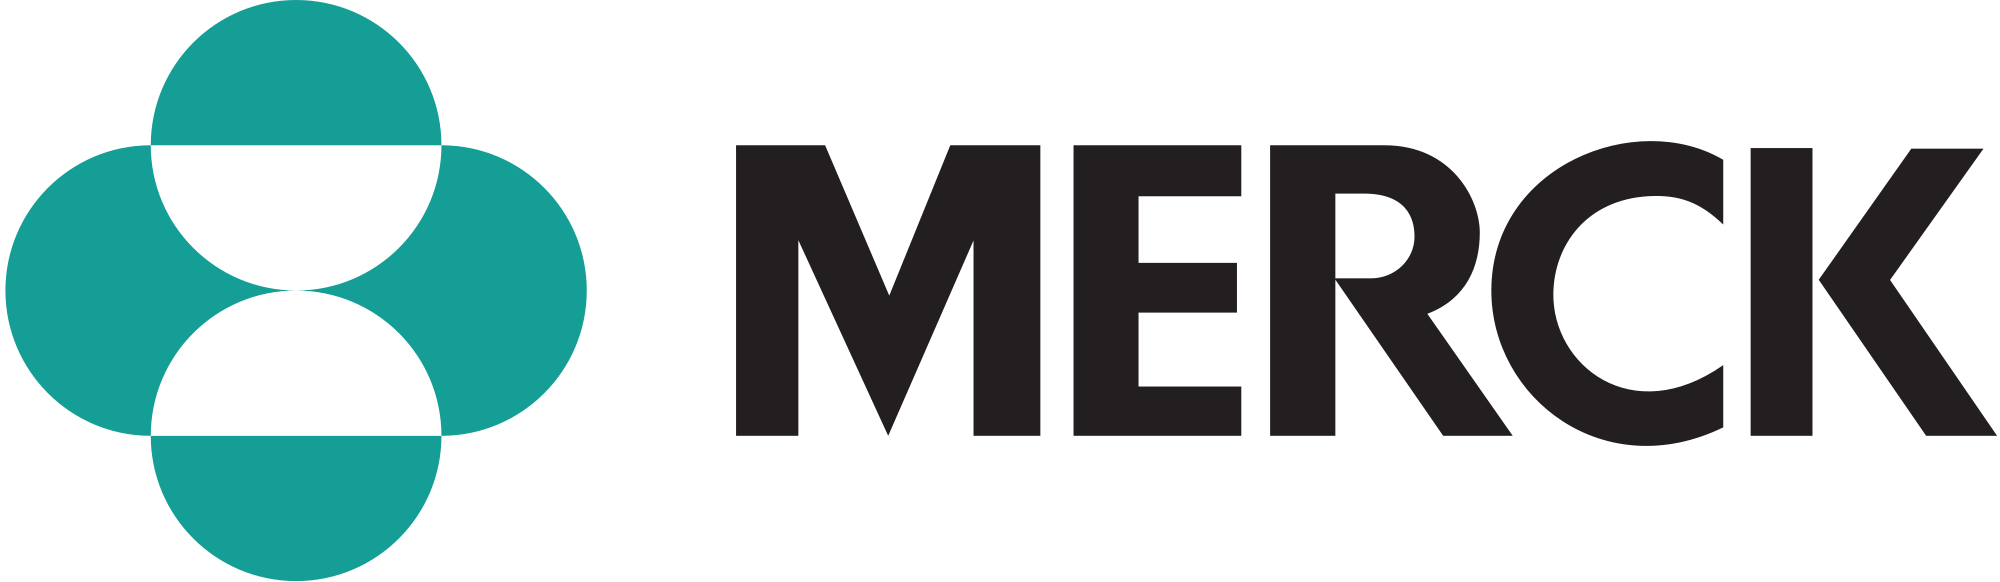 Merck+Medco.png